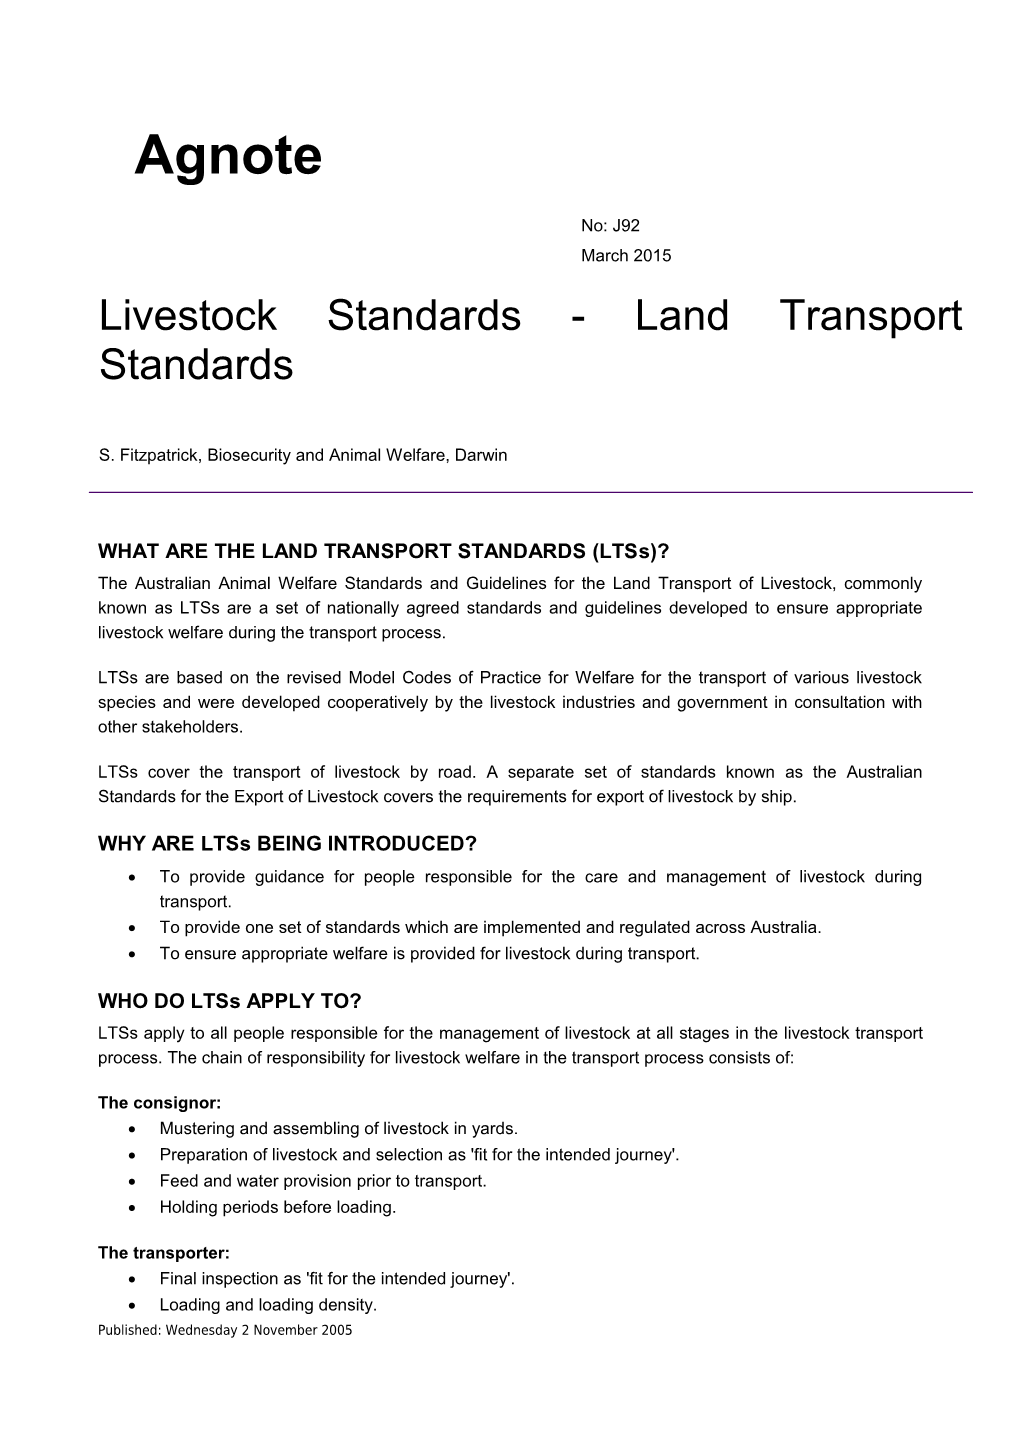 Livestock Standards - Land Transport